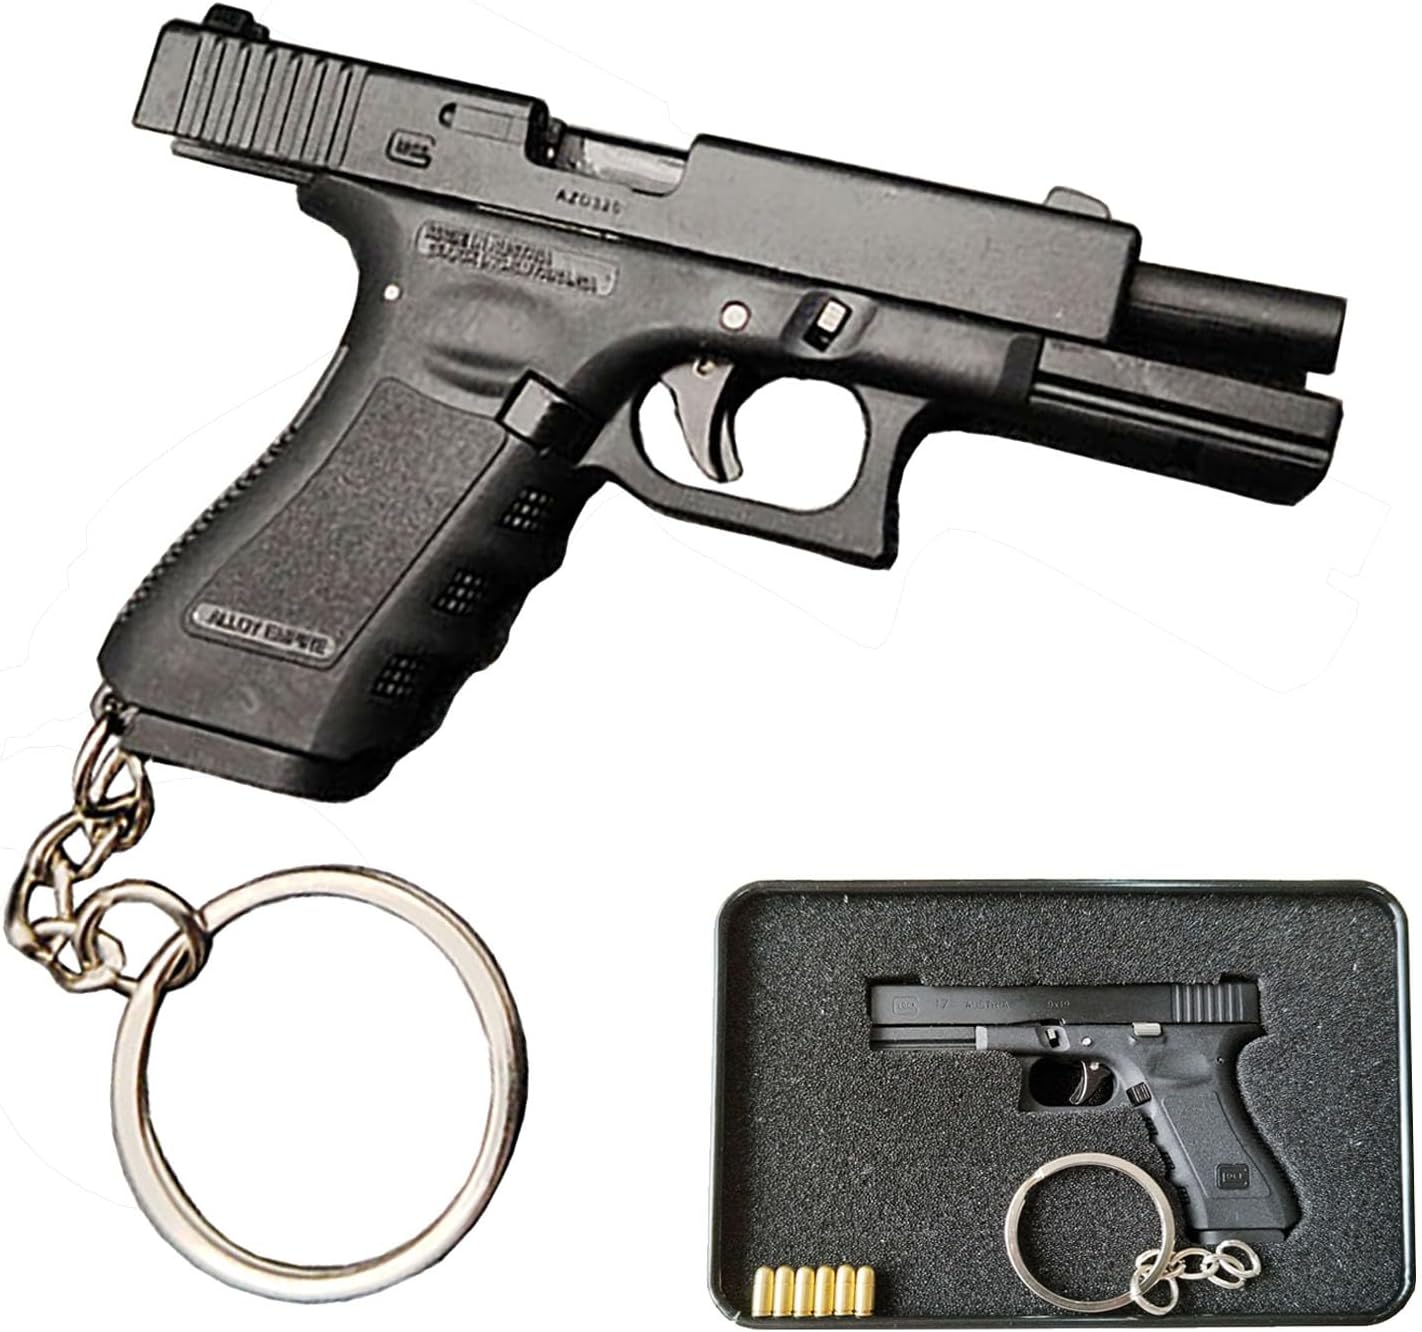 Mtlee 2 Pack Car Key Chain Bottle Opener Keychain For Men And Women (Gun  Gold)